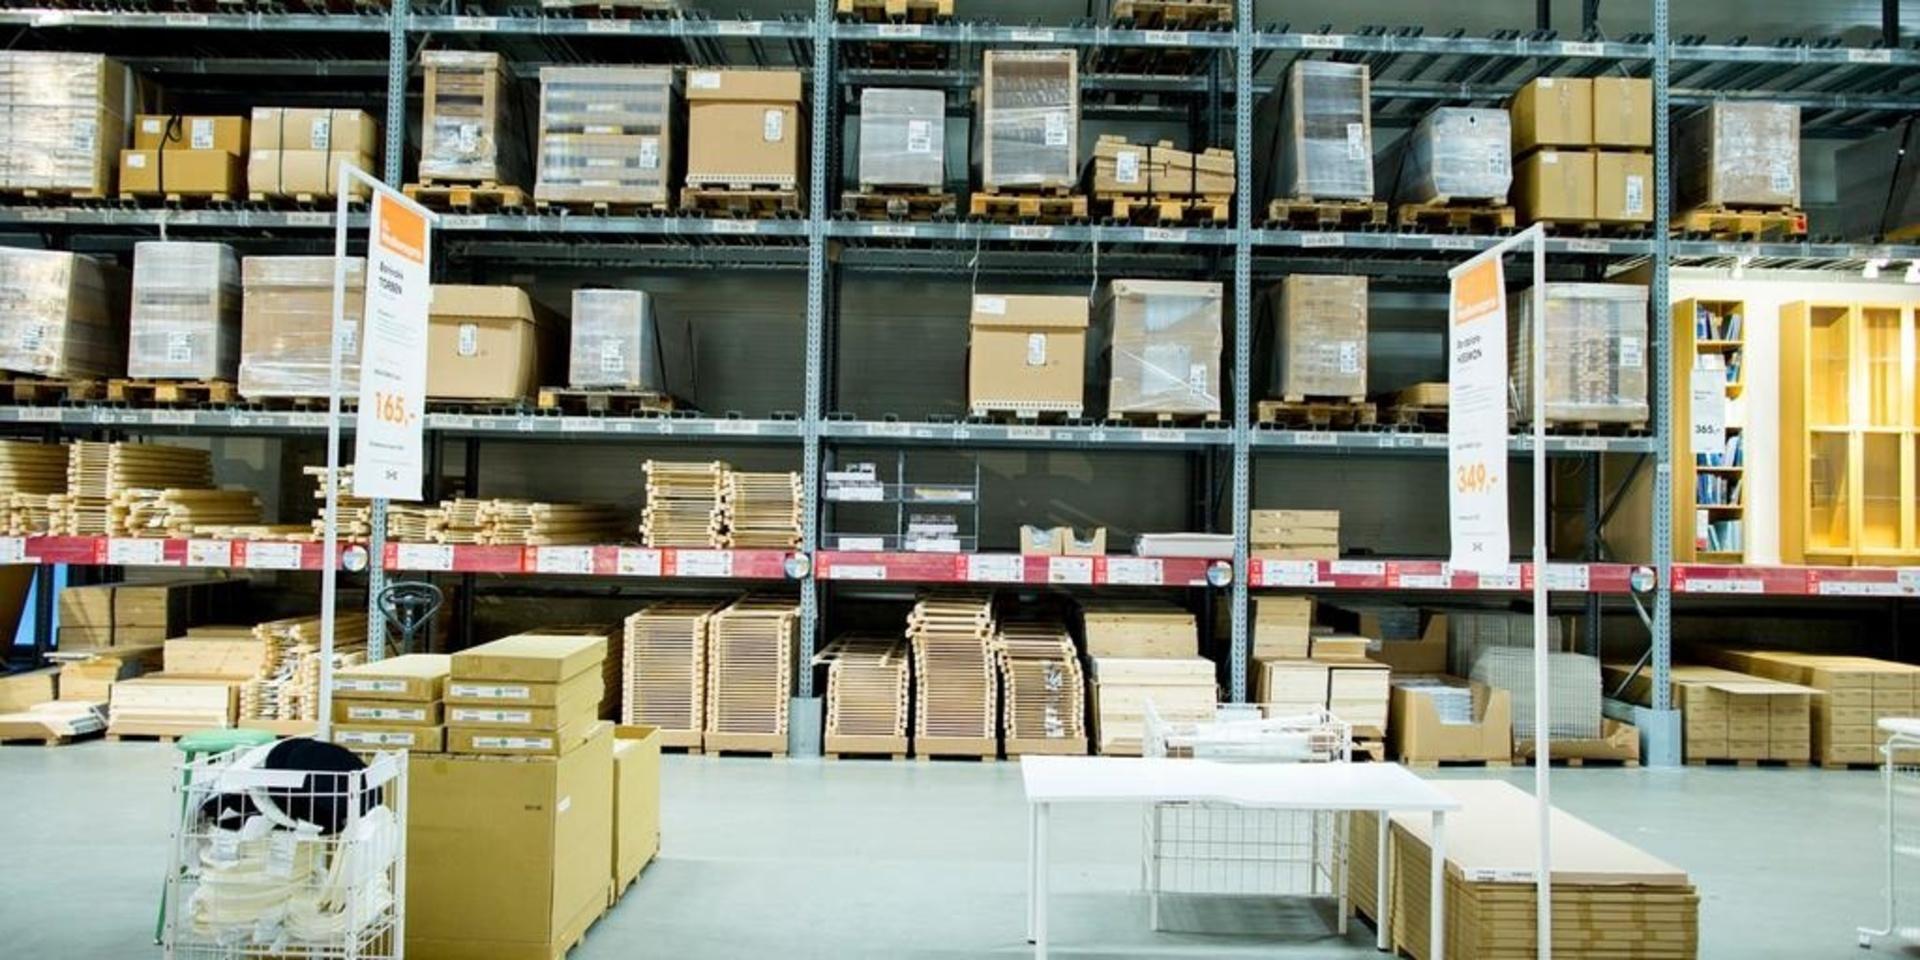 Omkring tusen av Ikeas 10 000 varor i det ordinarie sortimentet fattas. Bild: Vegard Wivestad, Grøtt